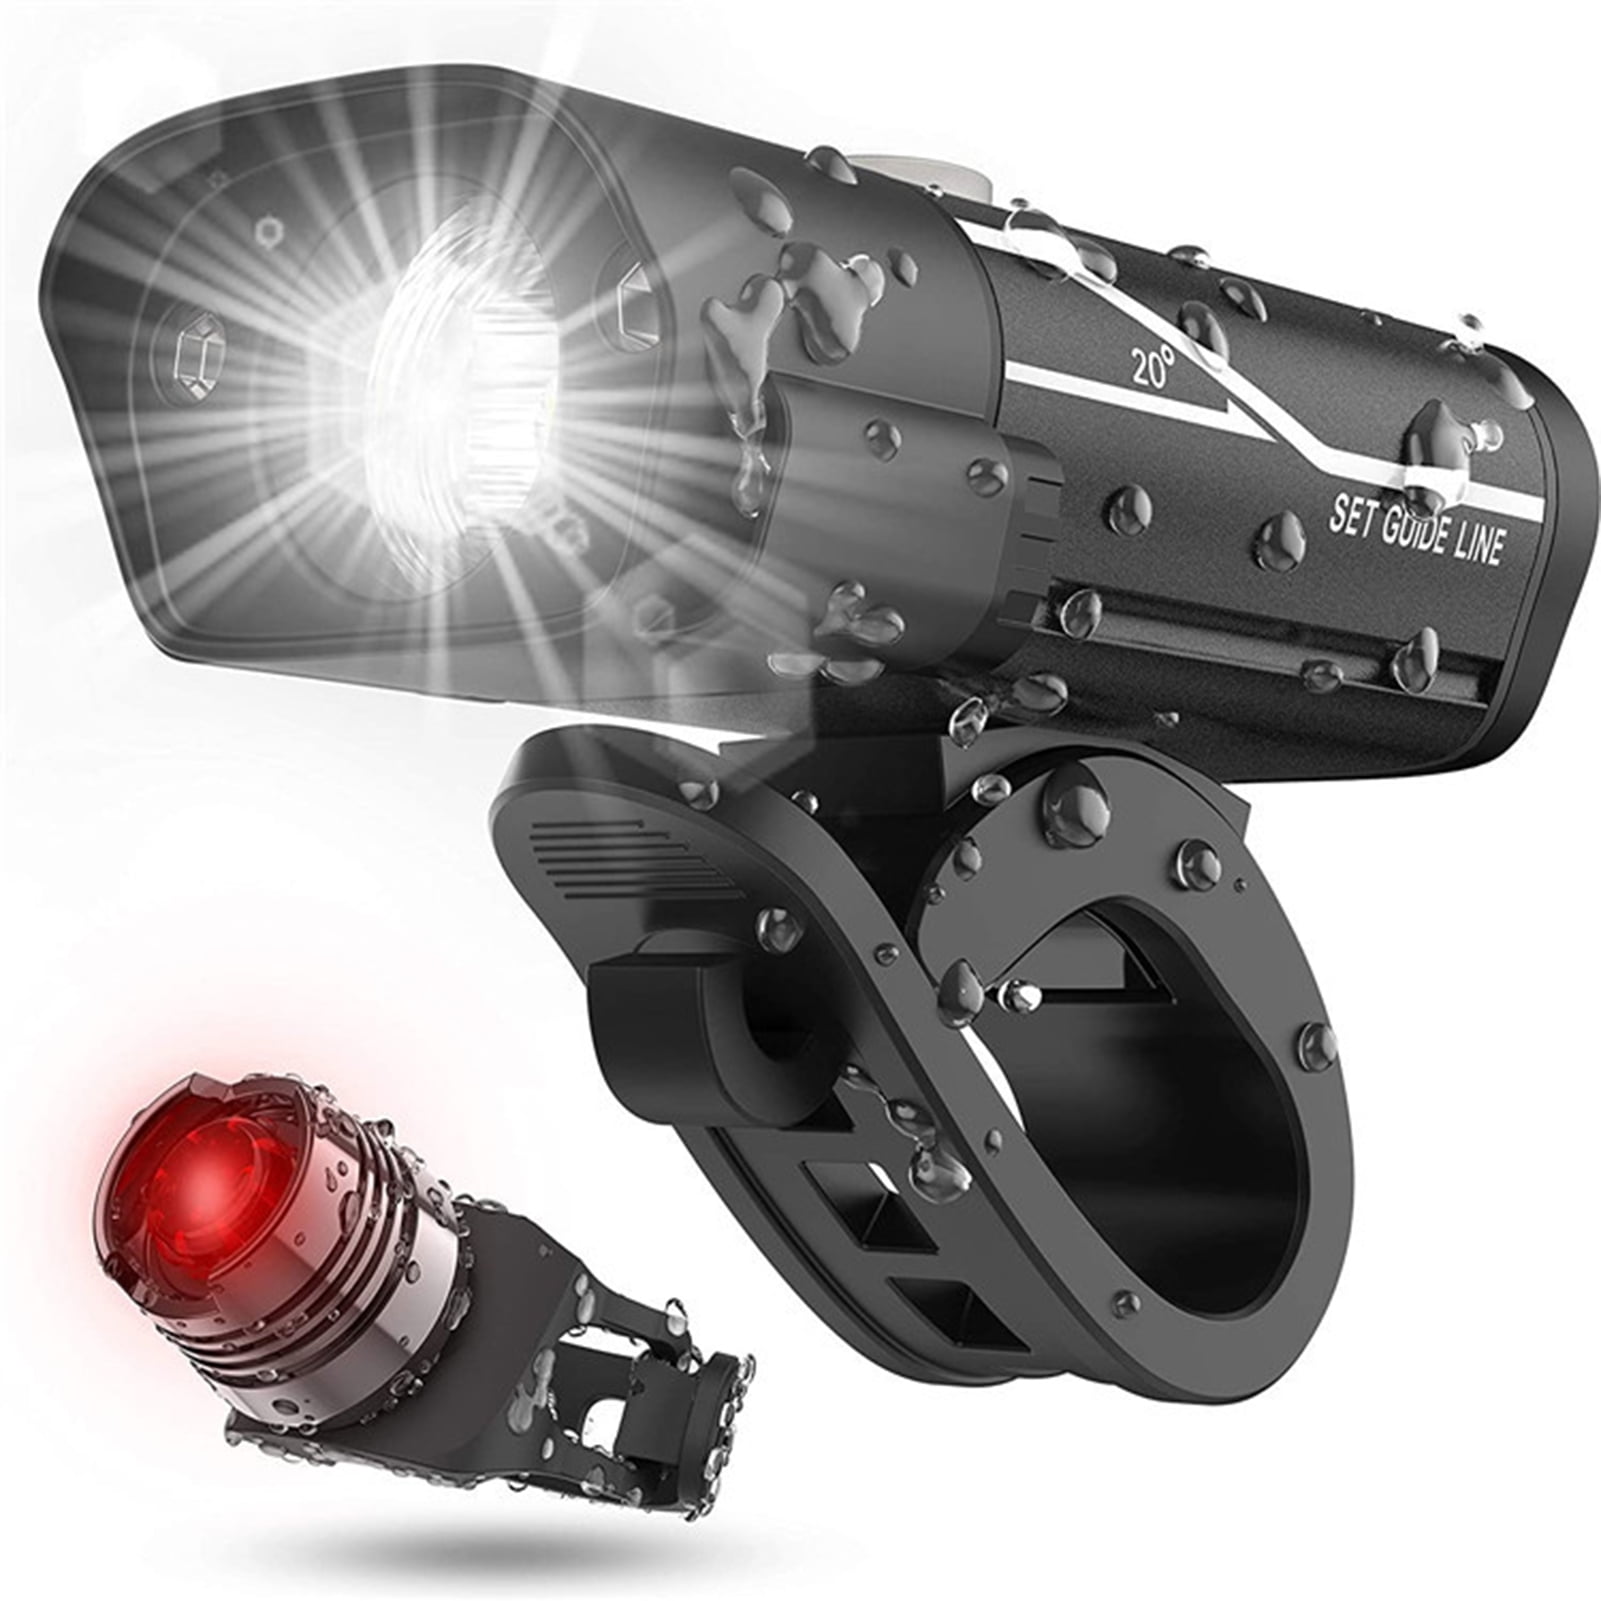 Tailight Headlight Combo Front Rear USB Bike 3 LED Super Bright Light Set 